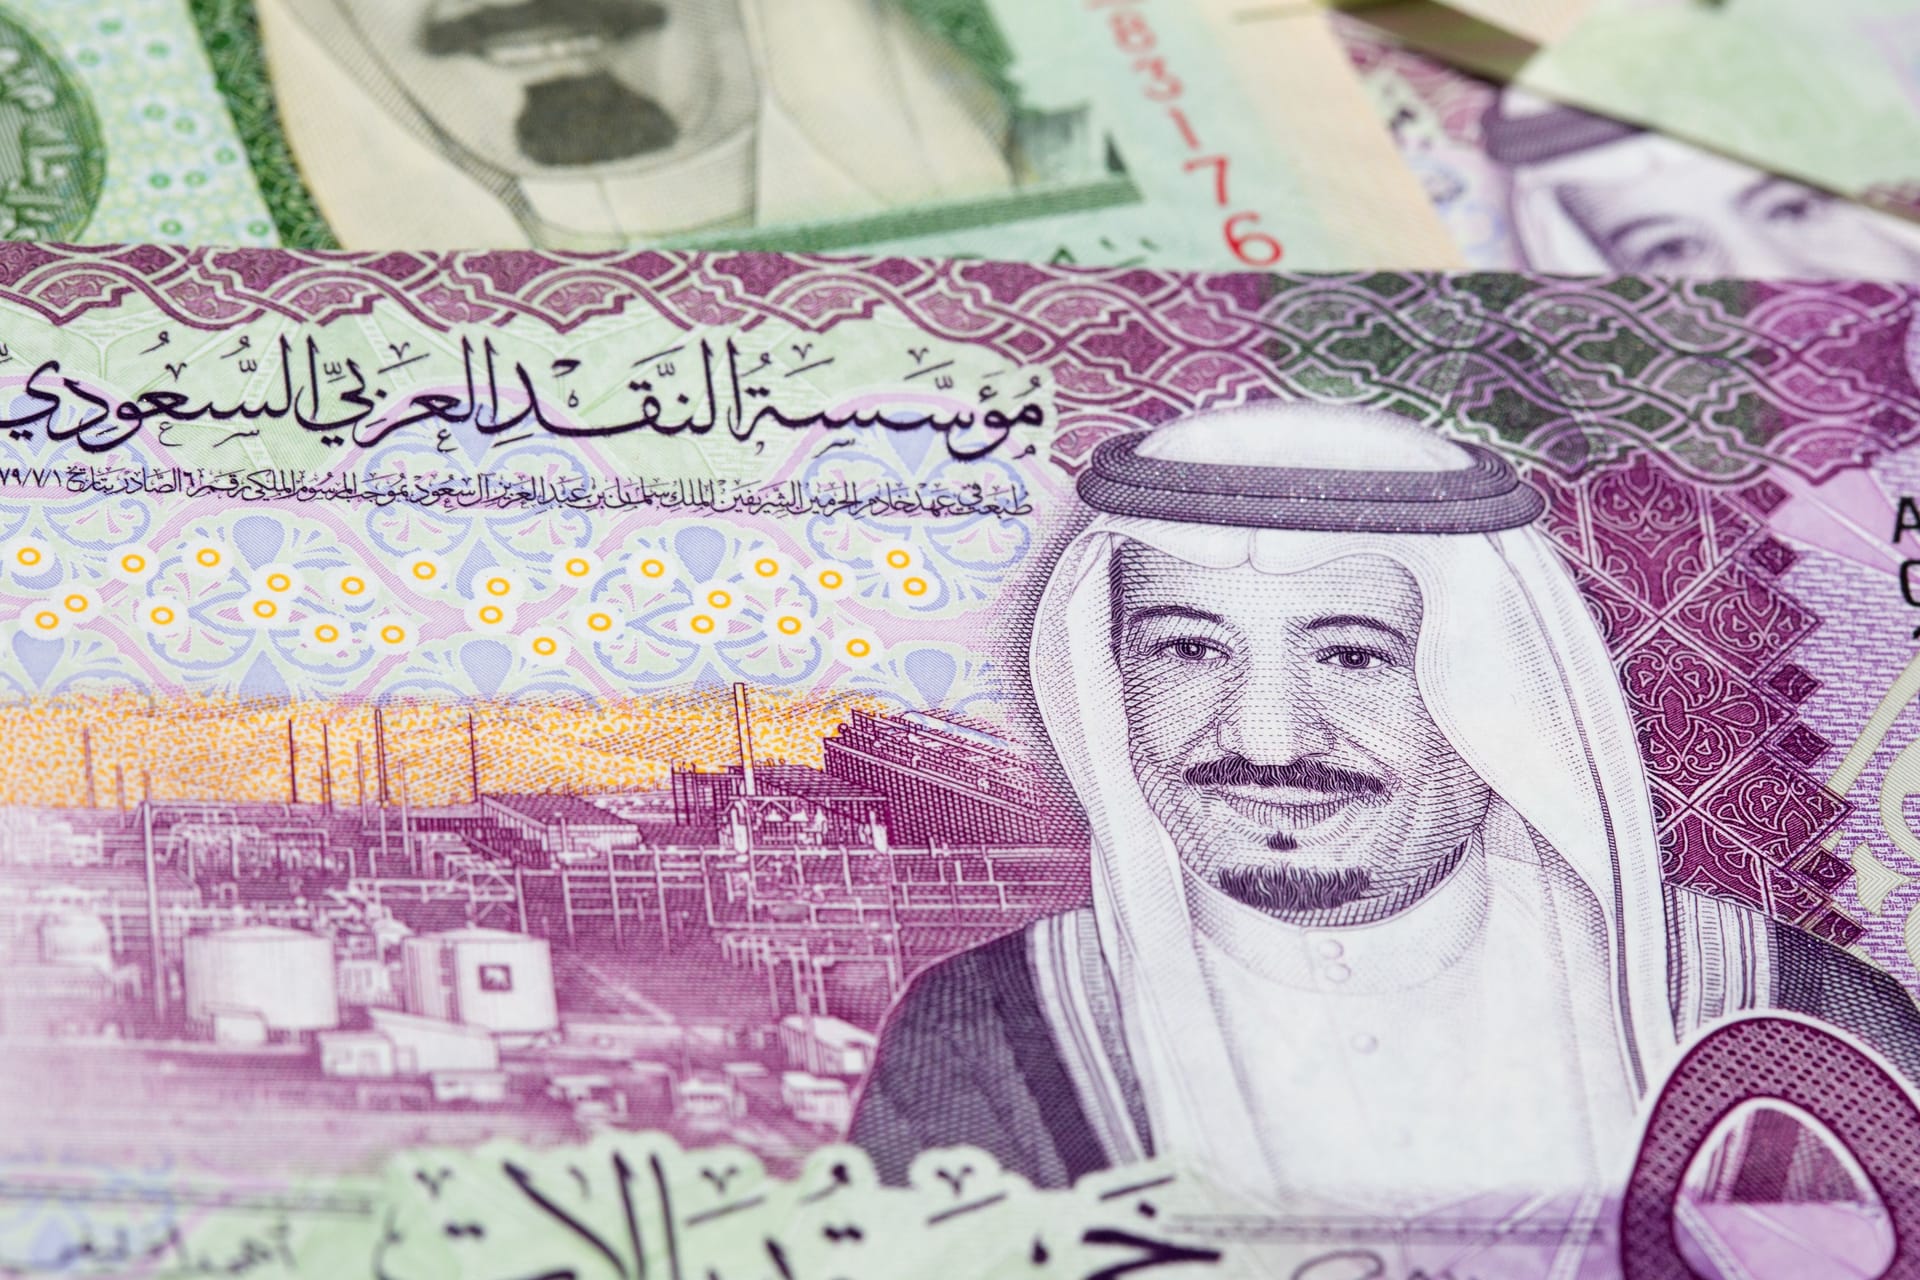 Ein saudischer Geldschein zeigt König Salman vor einer Ölraffinerie: Während der Vater offiziell noch über das Land herrscht, hat sein Sohn Mohammed längst die Regierungsgeschäfte übernommen.